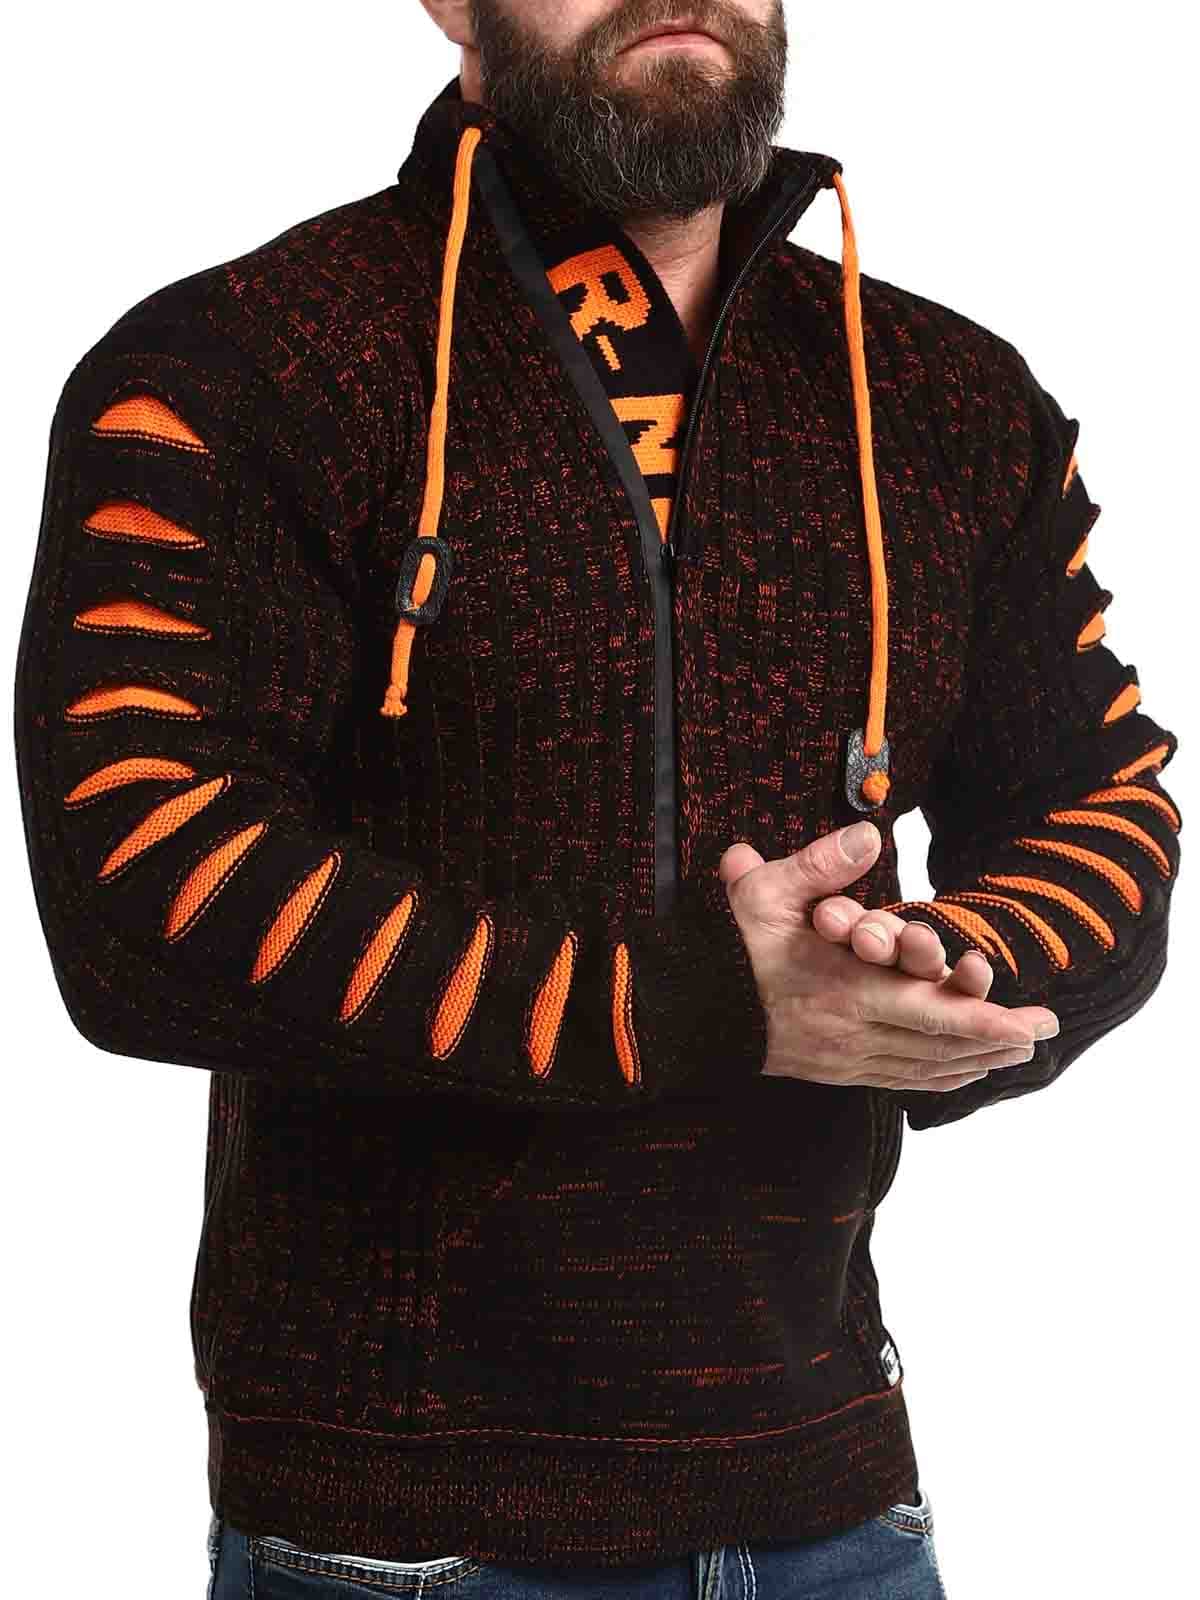 Bartoli Sweater Black Orange_1.jpg